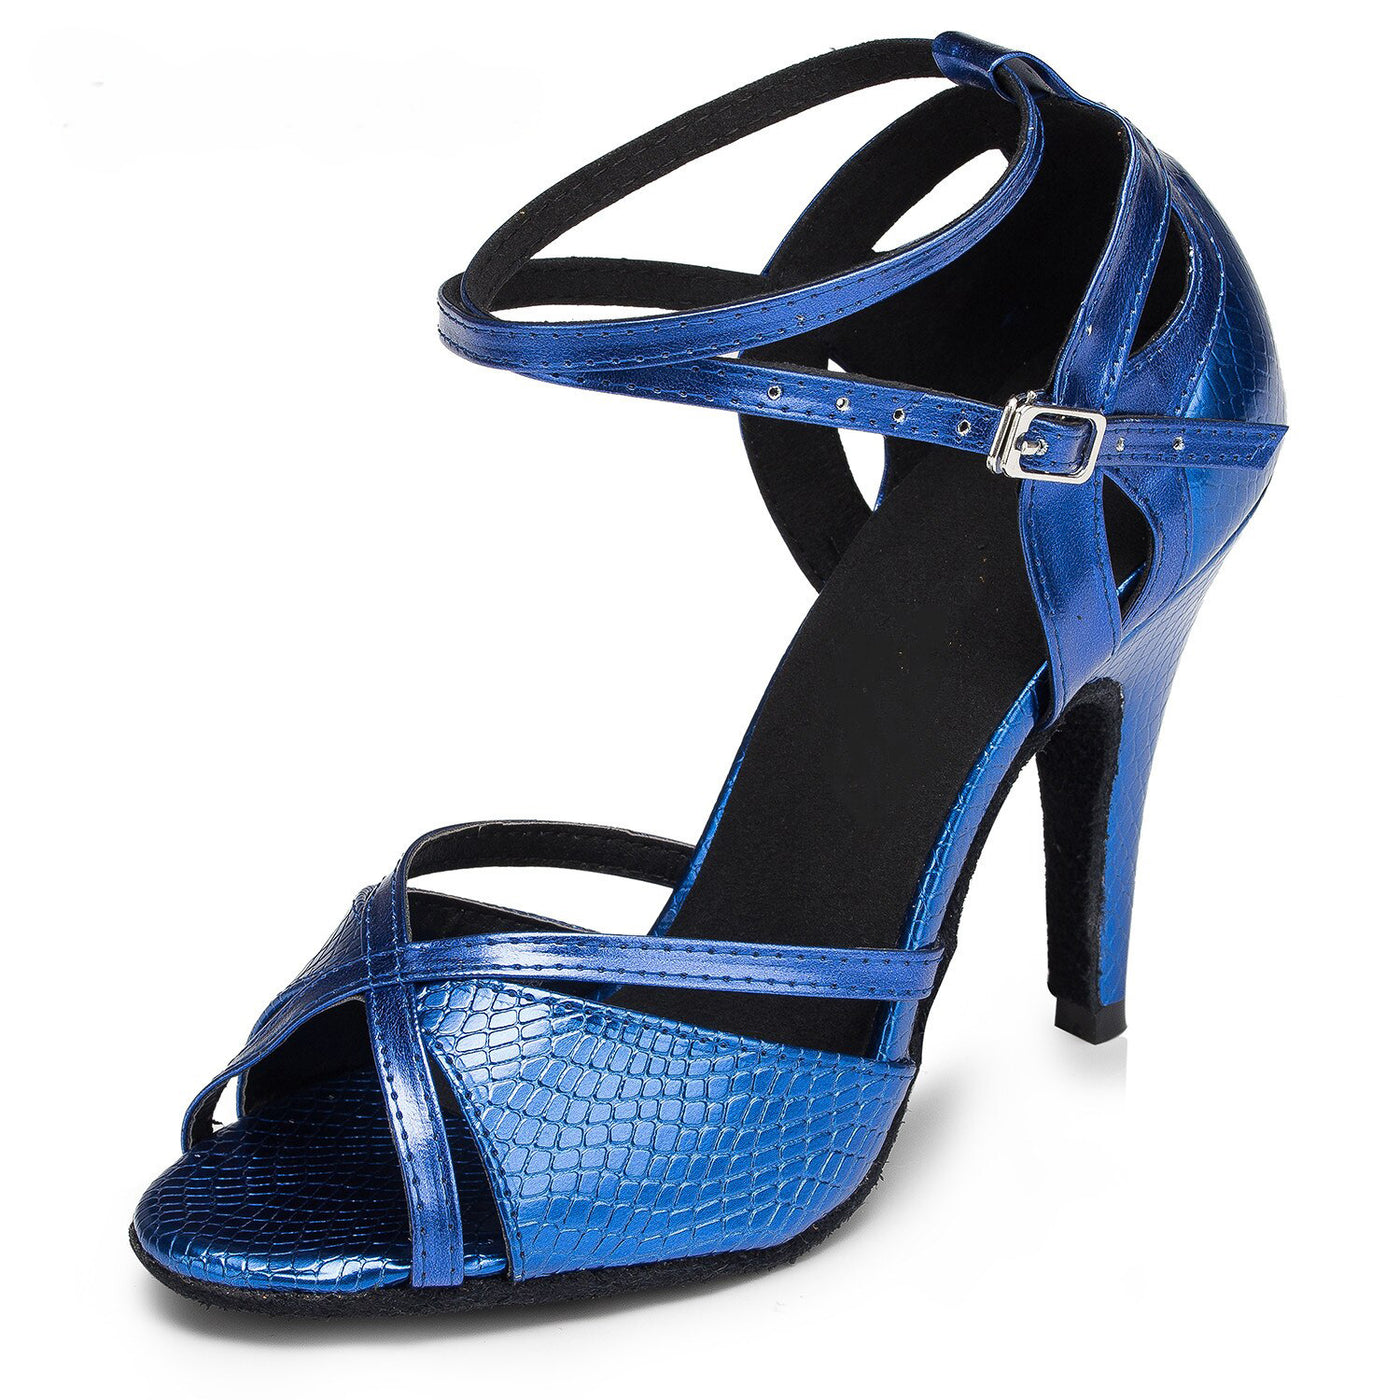 Chaussures de danse pour femme coloris bleu - Talons de 6 à 10cm